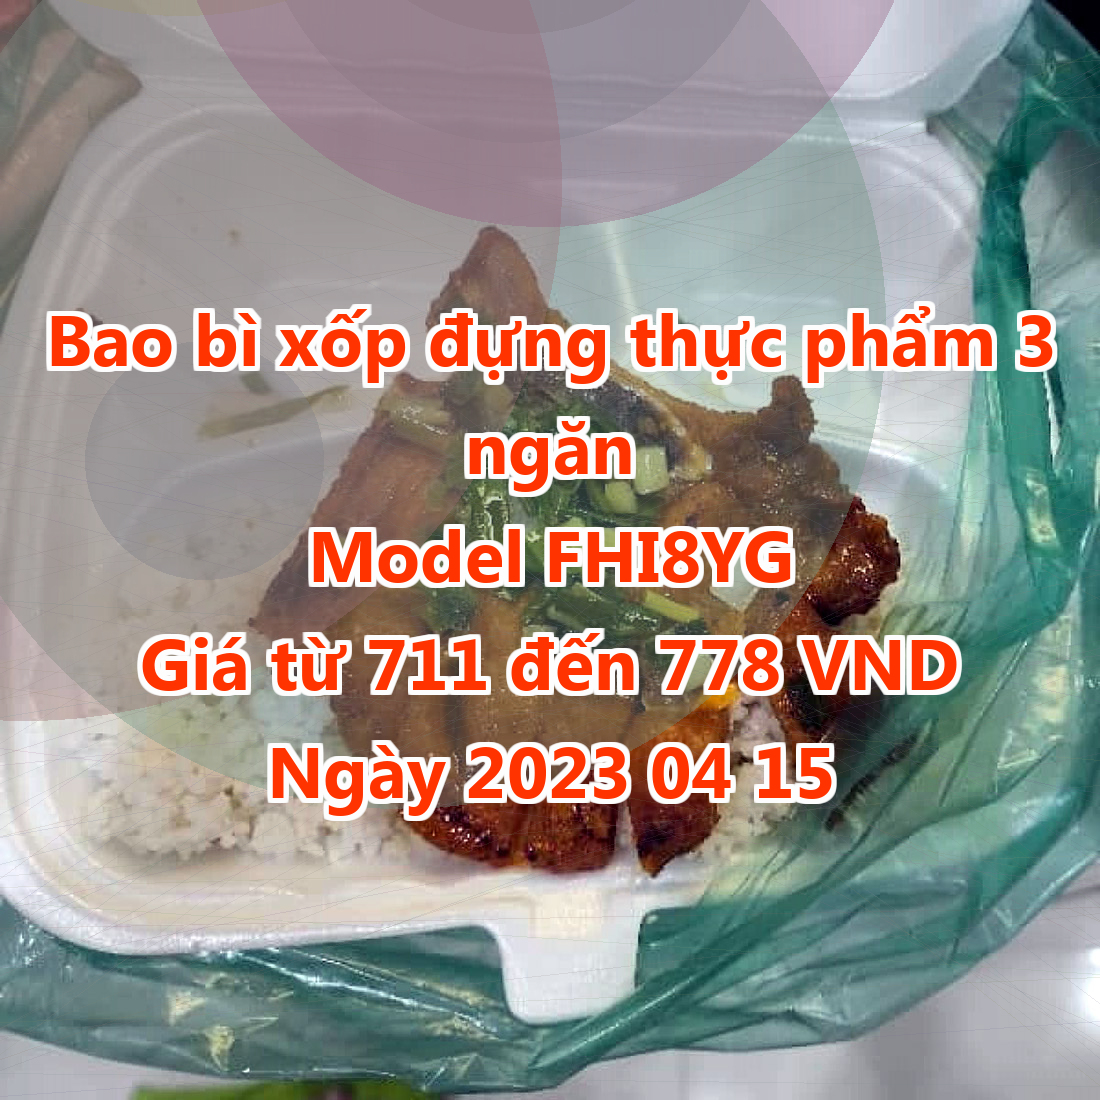 Bao bì xốp đựng thực phẩm 3 ngăn - Model FHI8YG - Giá 711 VND